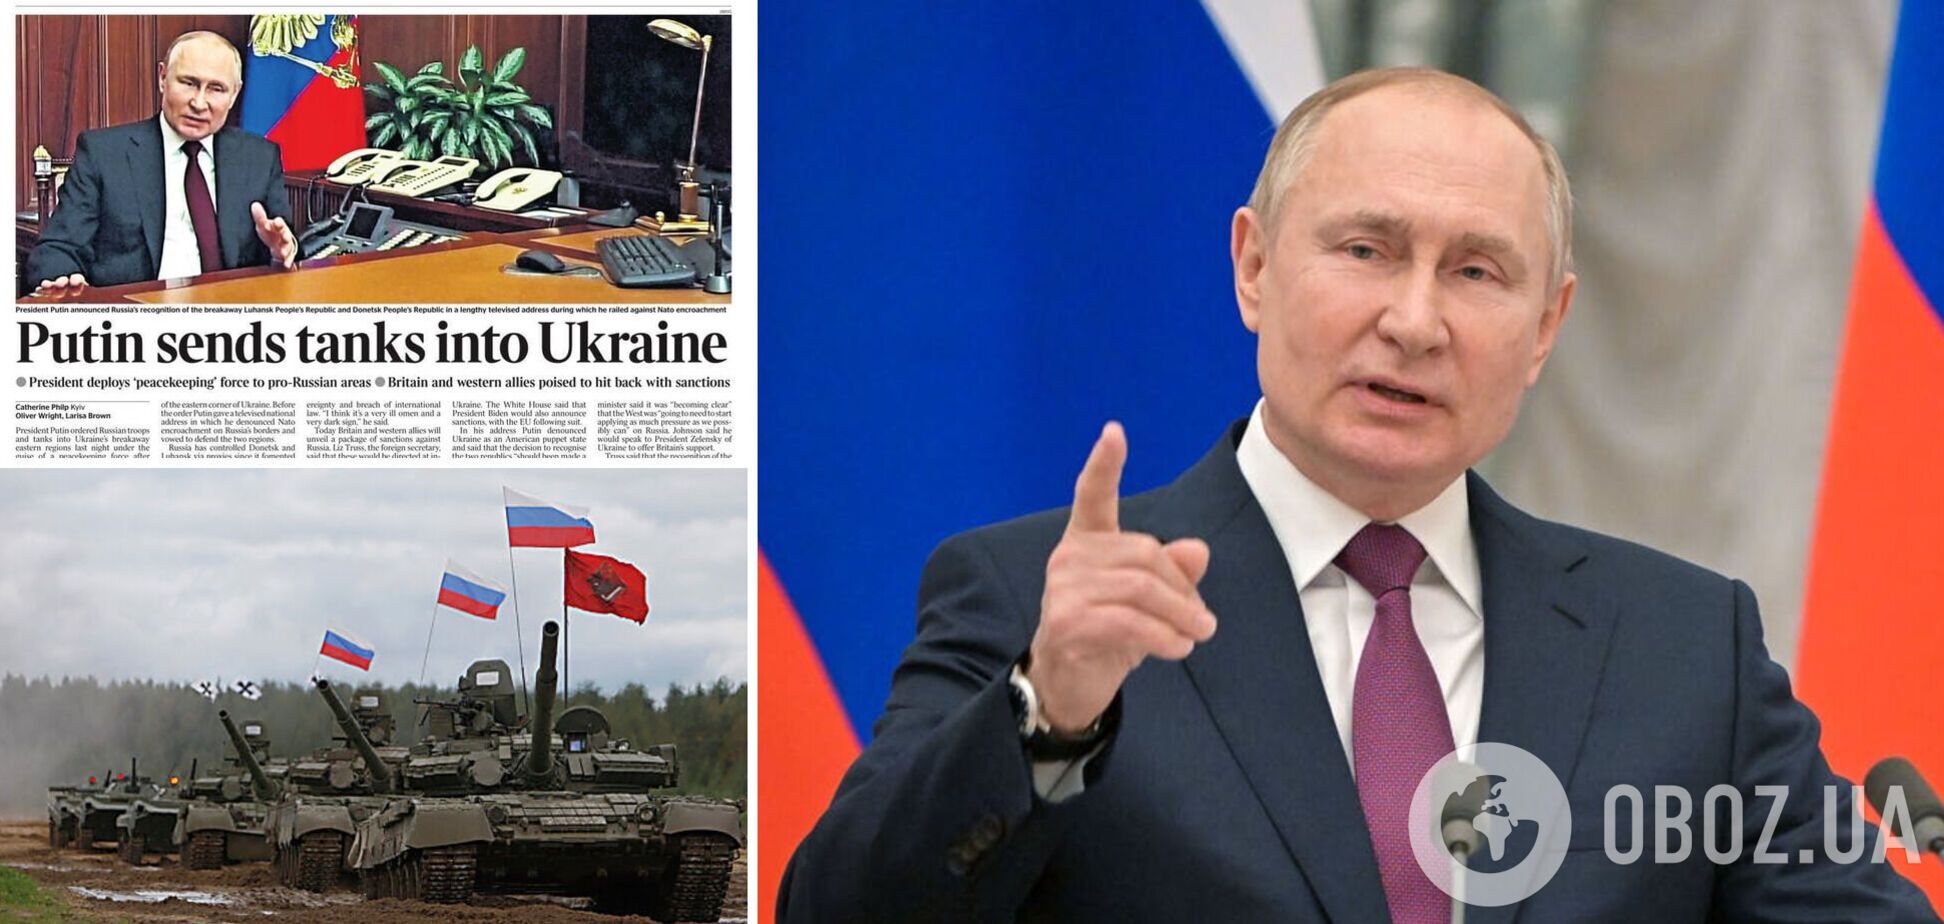 'Путін відправляє танки': Україна у центрі уваги світових ЗМІ через 'визнання' Росією 'ЛДНР'. Фото